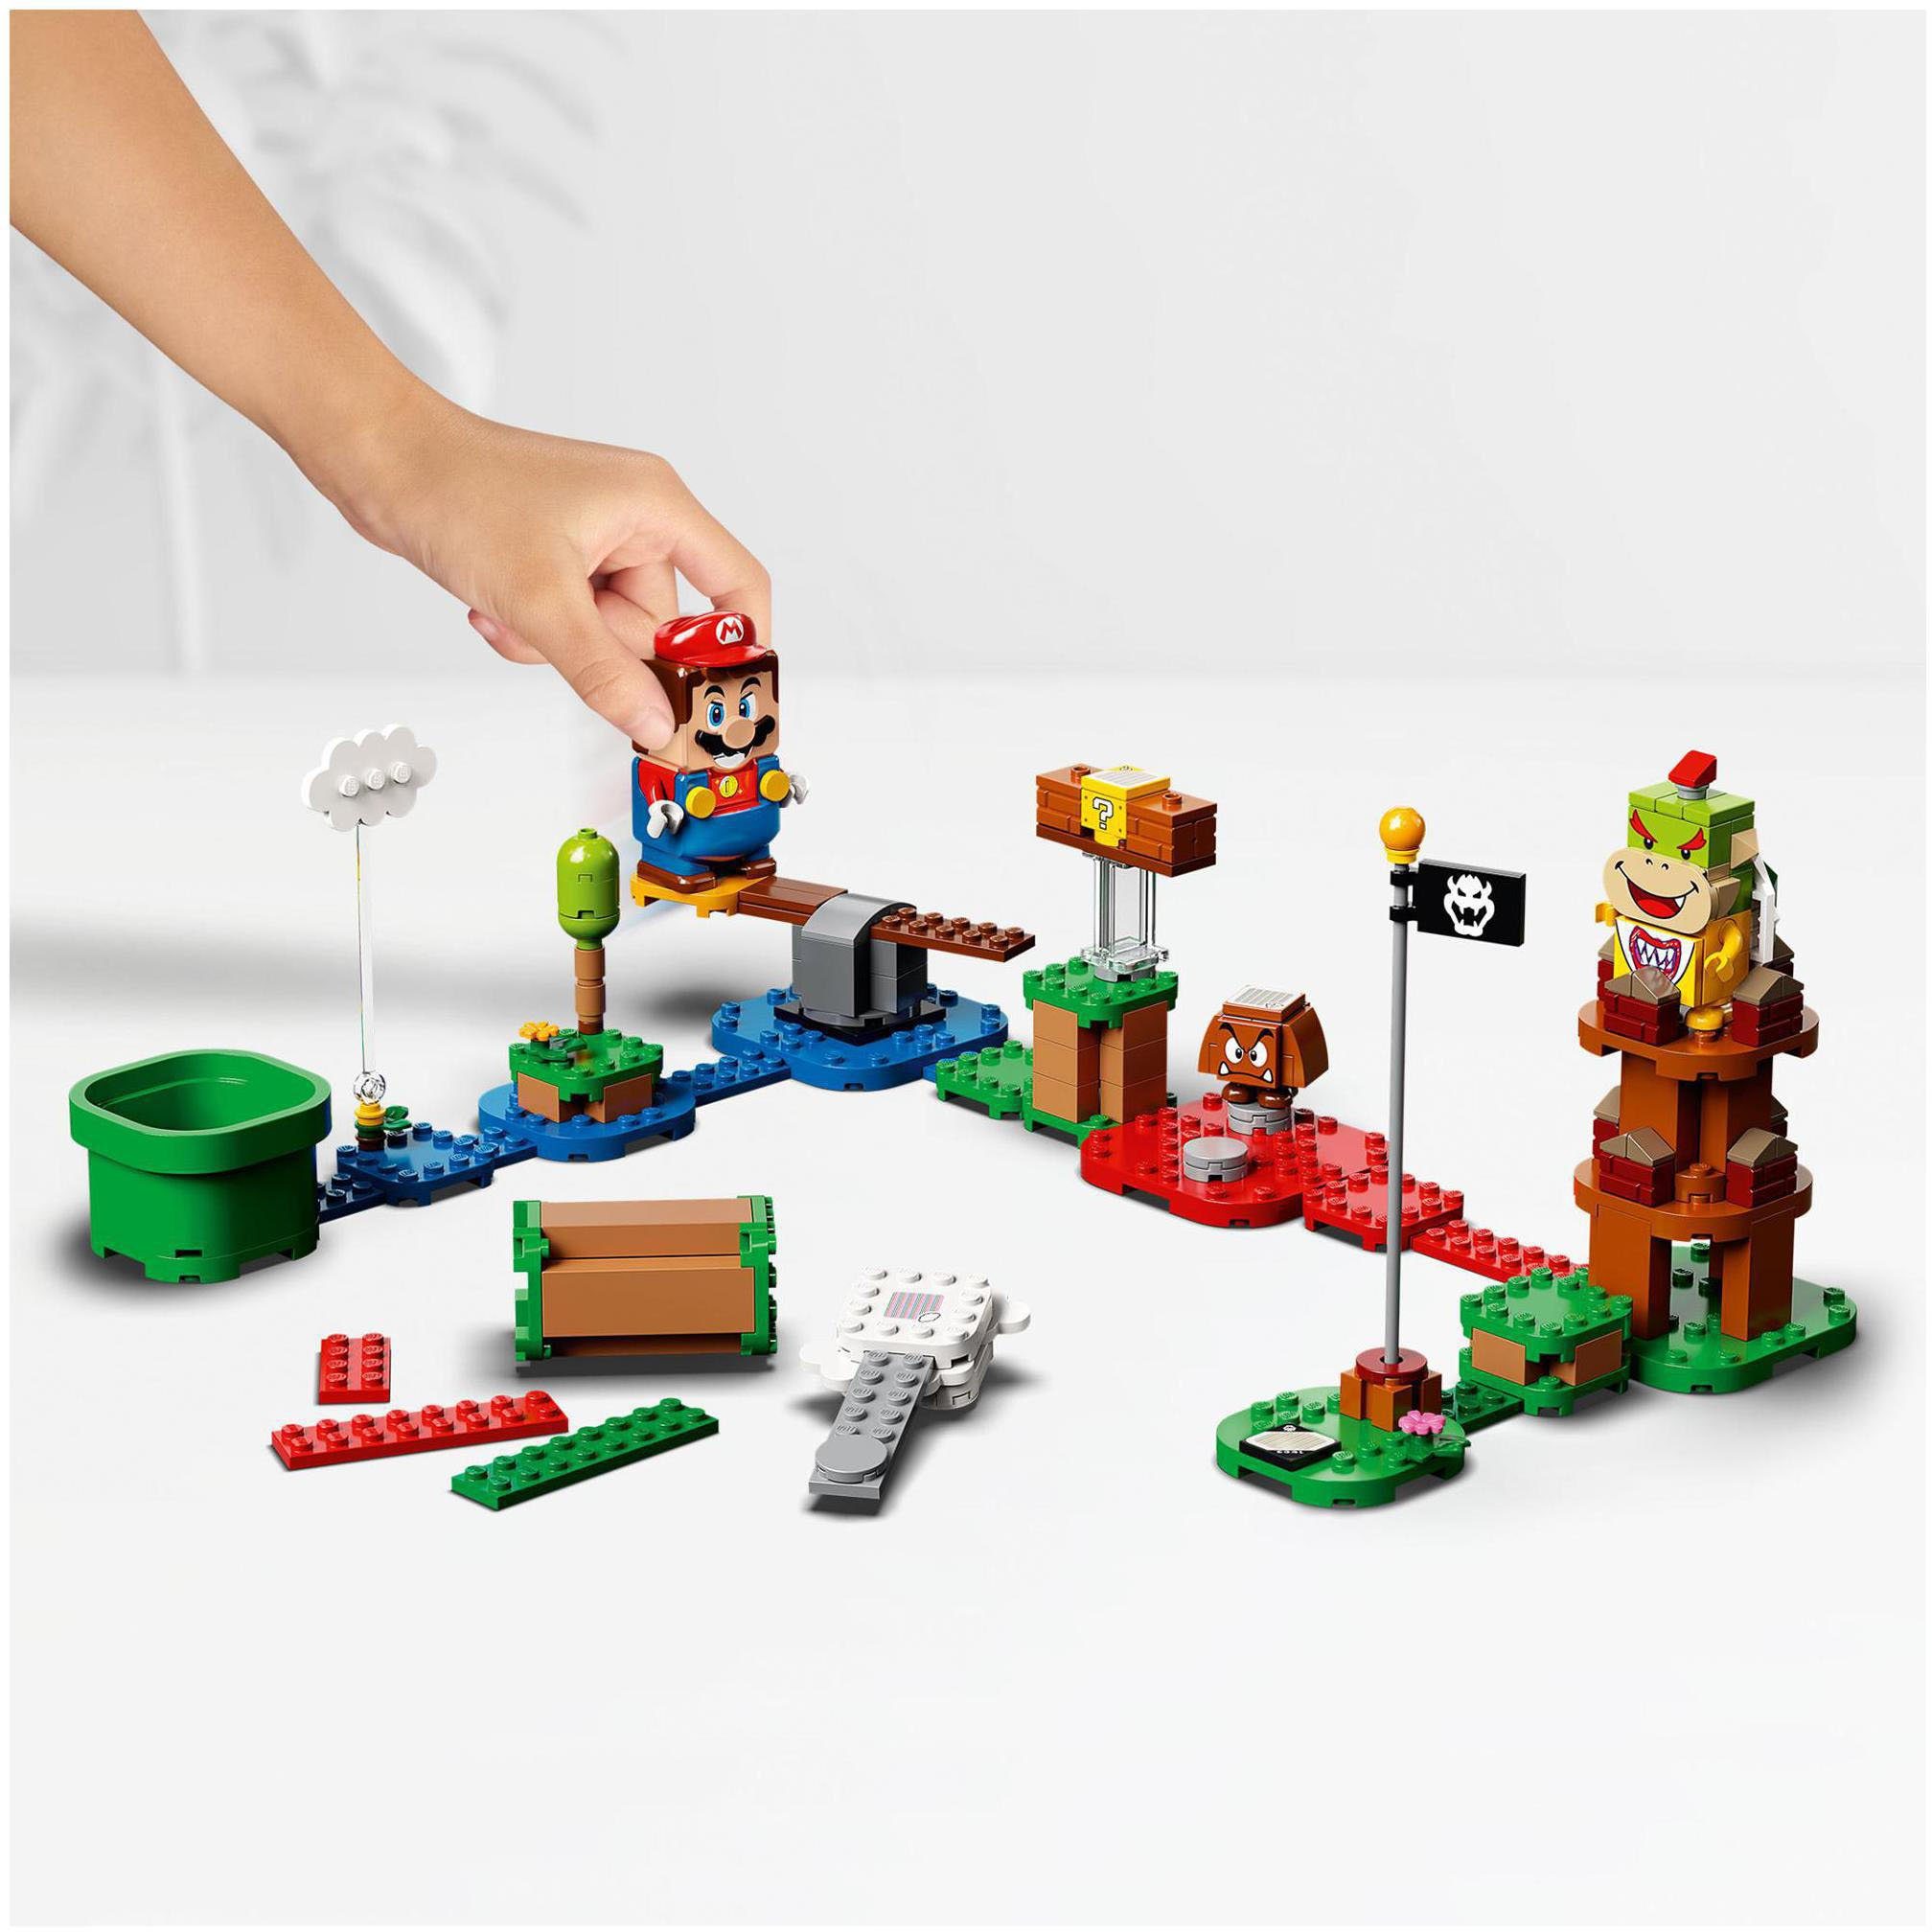 Starterset LEGO® Mario Konstruktionsspielsteine – Super Mario, St) LEGO® (71360), Abenteuer (231 mit